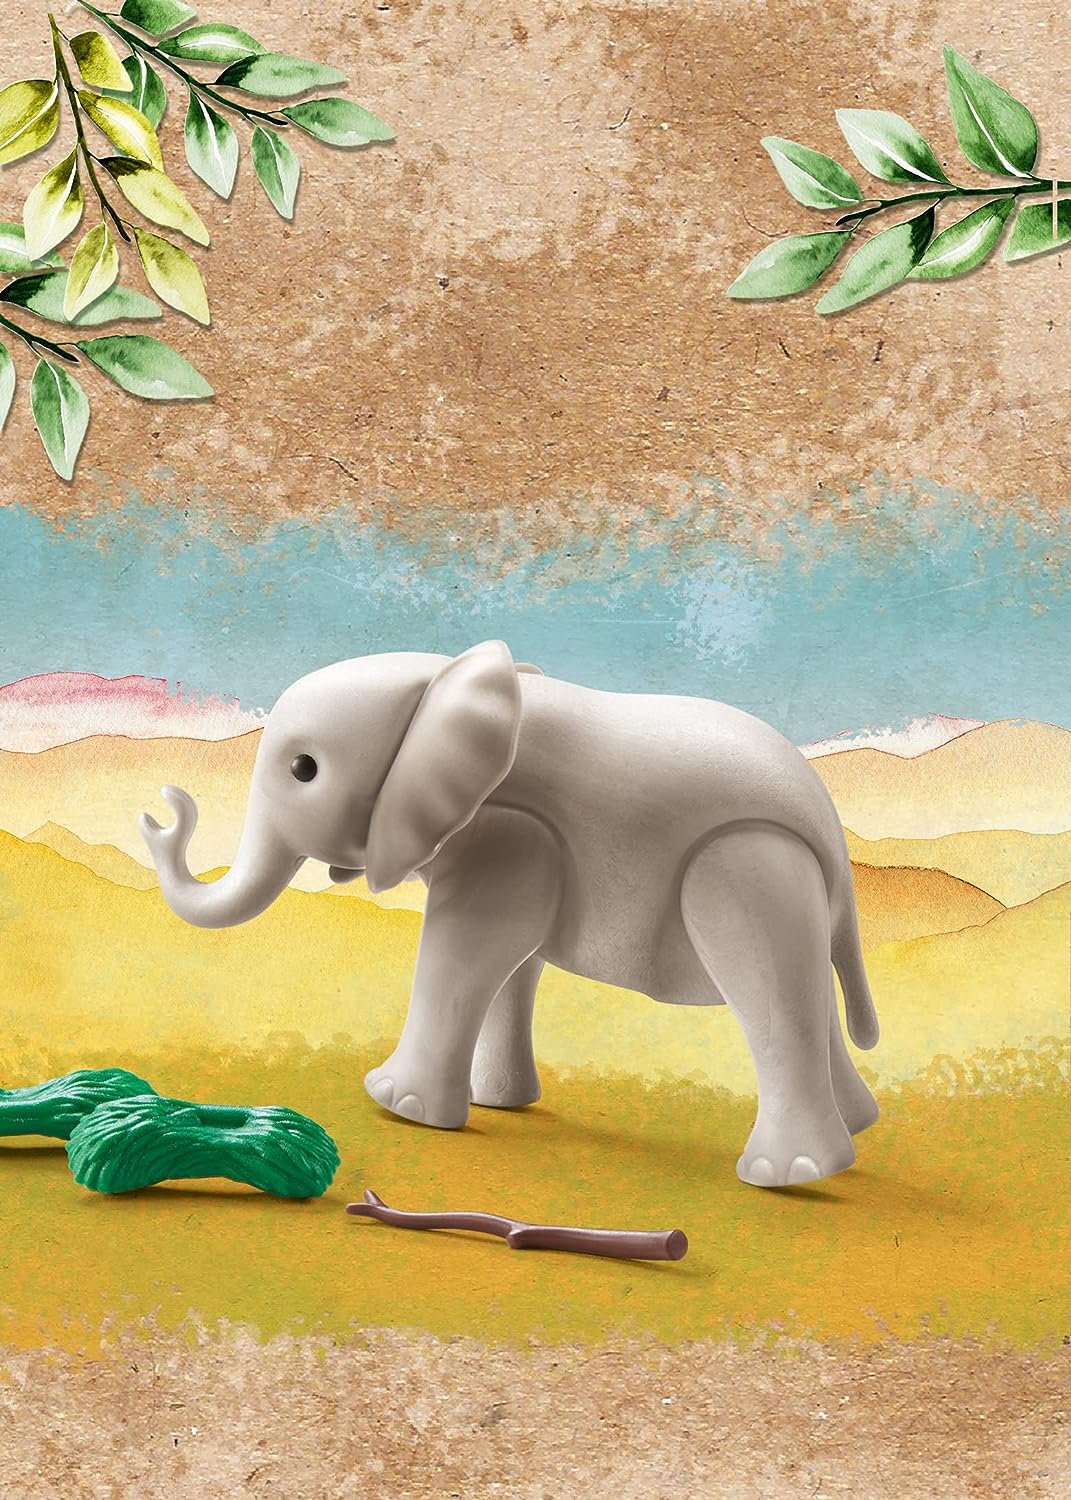 Playmobil 71049 Wiltopia Junger Elefant, Tierspielzeug, für Kinder 4-10, nachhaltig